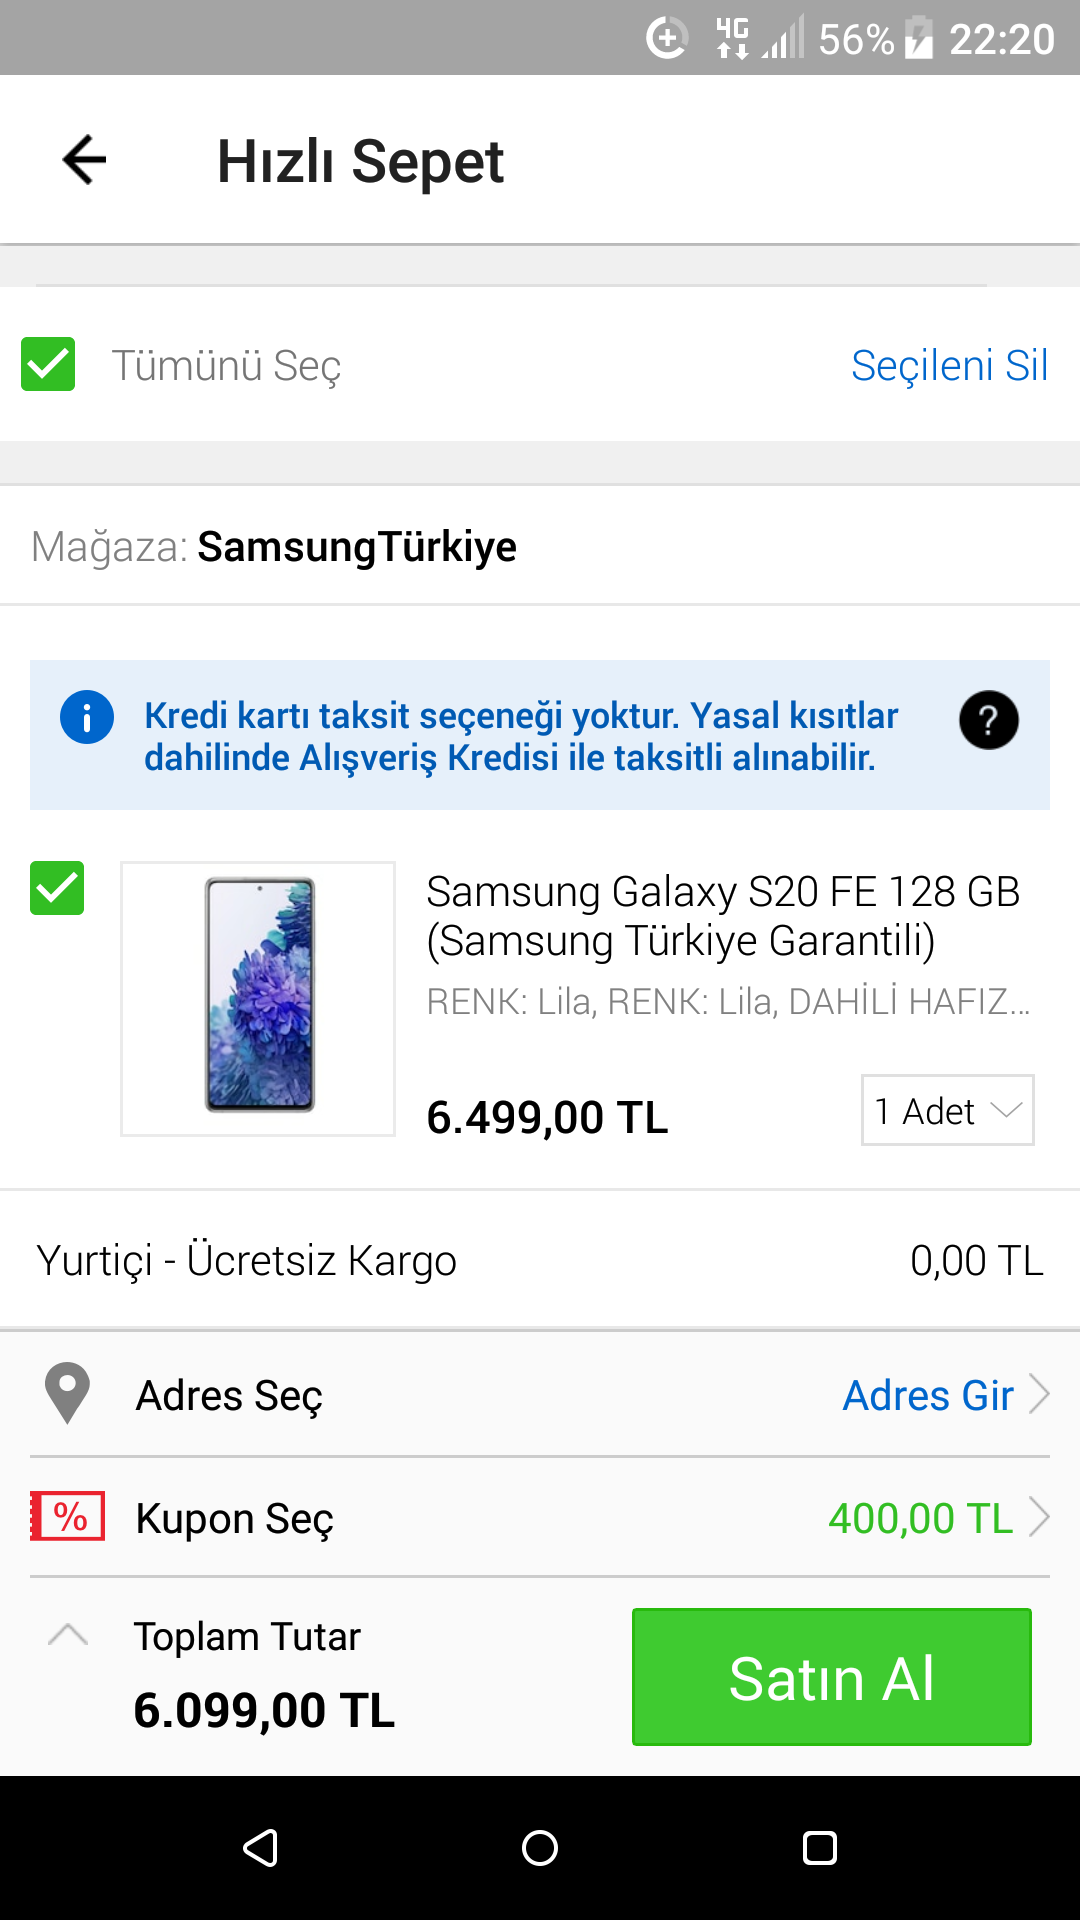 N11 Samsung Galaxy S20 FE + buds. 400 tl indirim